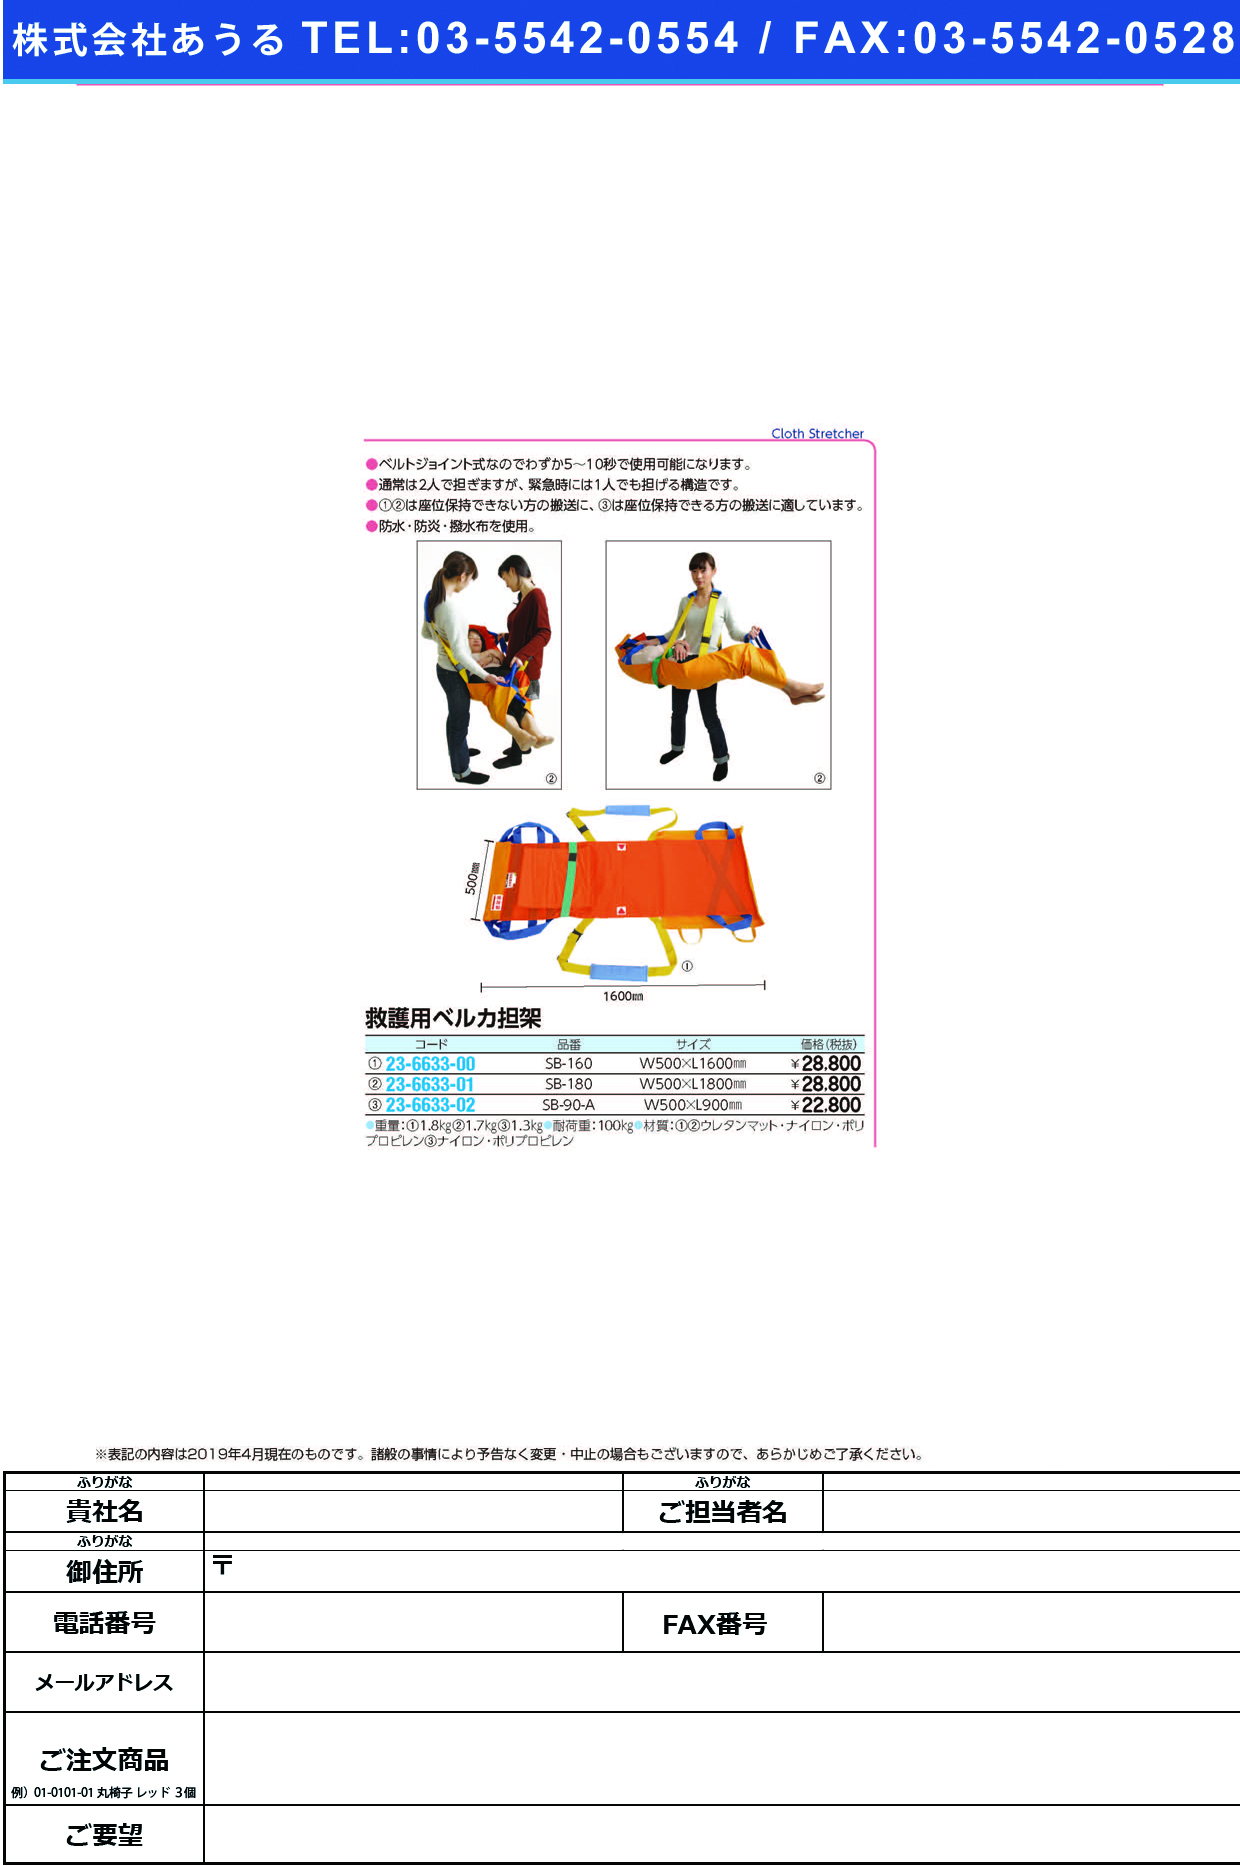 (23-6633-00)ベルカワンタッチ式救護担架 SB-160 ﾍﾞﾙｶﾜﾝﾀｯﾁｼｷｷｭｳｺﾞﾀﾝｶ【1枚単位】【2019年カタログ商品】